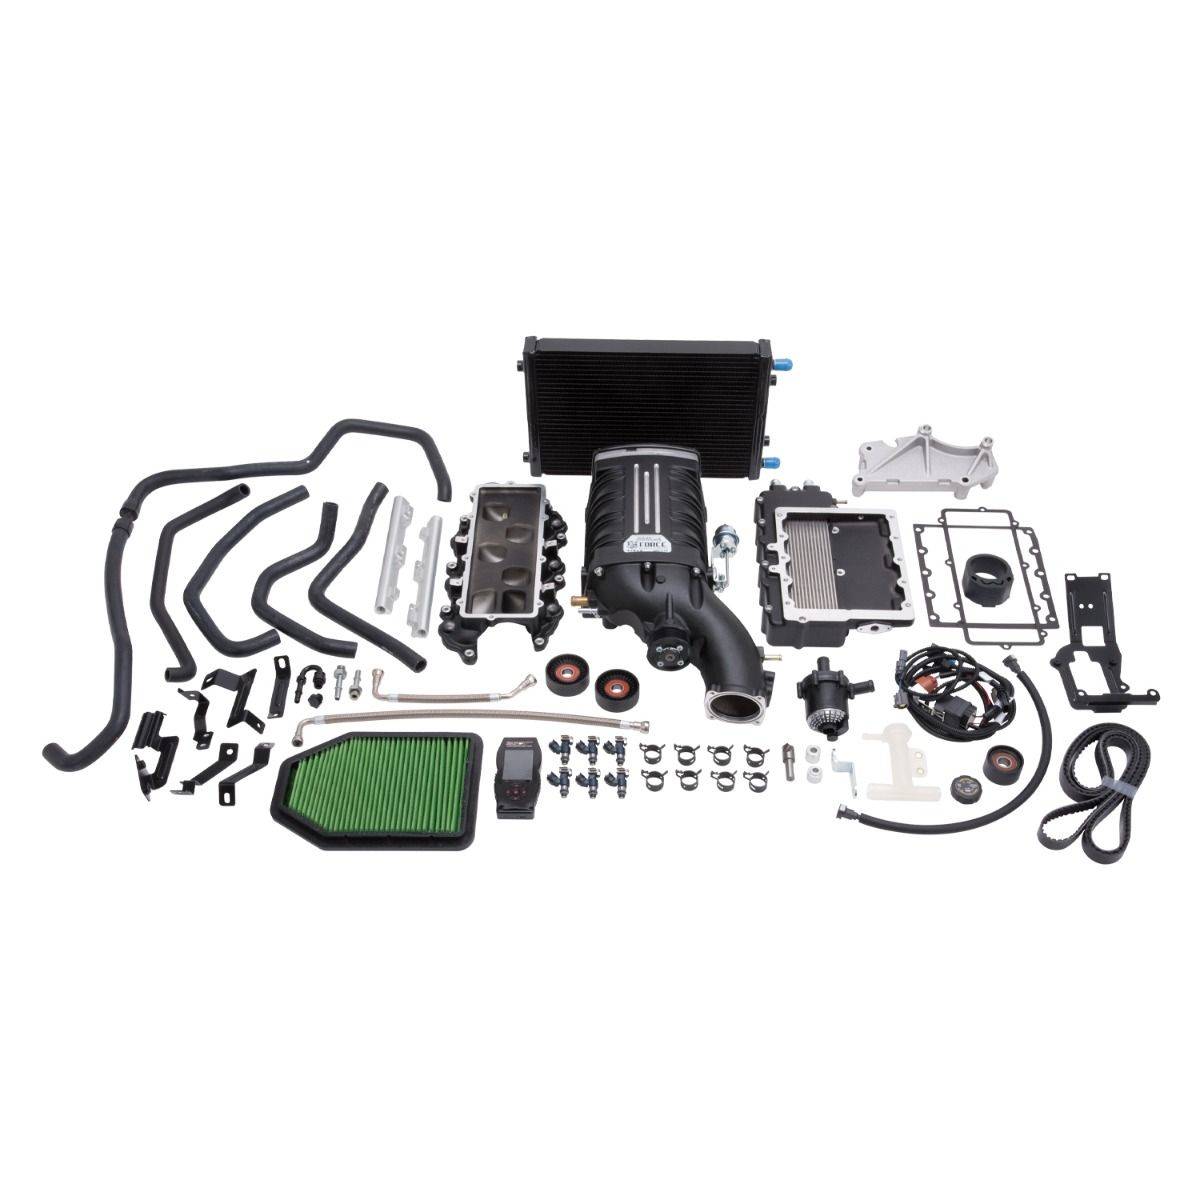 Edelbrock - Jeep Wrangler JK 3.6L 2012-2014 Edelbrock Stage 1 Complete Supercharger Intercooled Kit Without Tune - Image 1